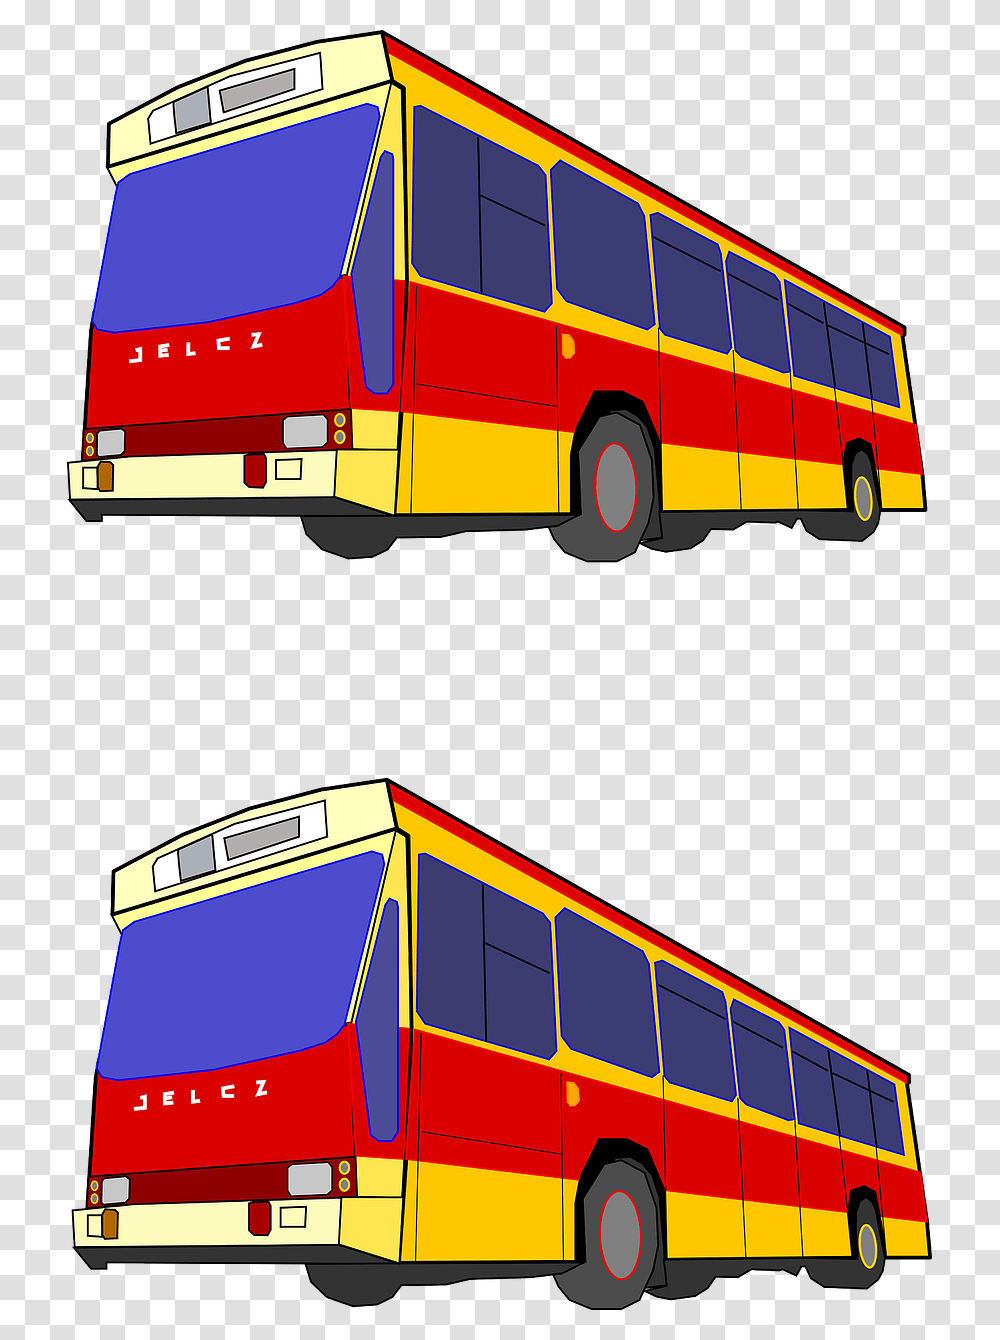 Red Yellow Blue Bus, Vehicle, Transportation, Tour Bus, Double Decker Bus Transparent Png